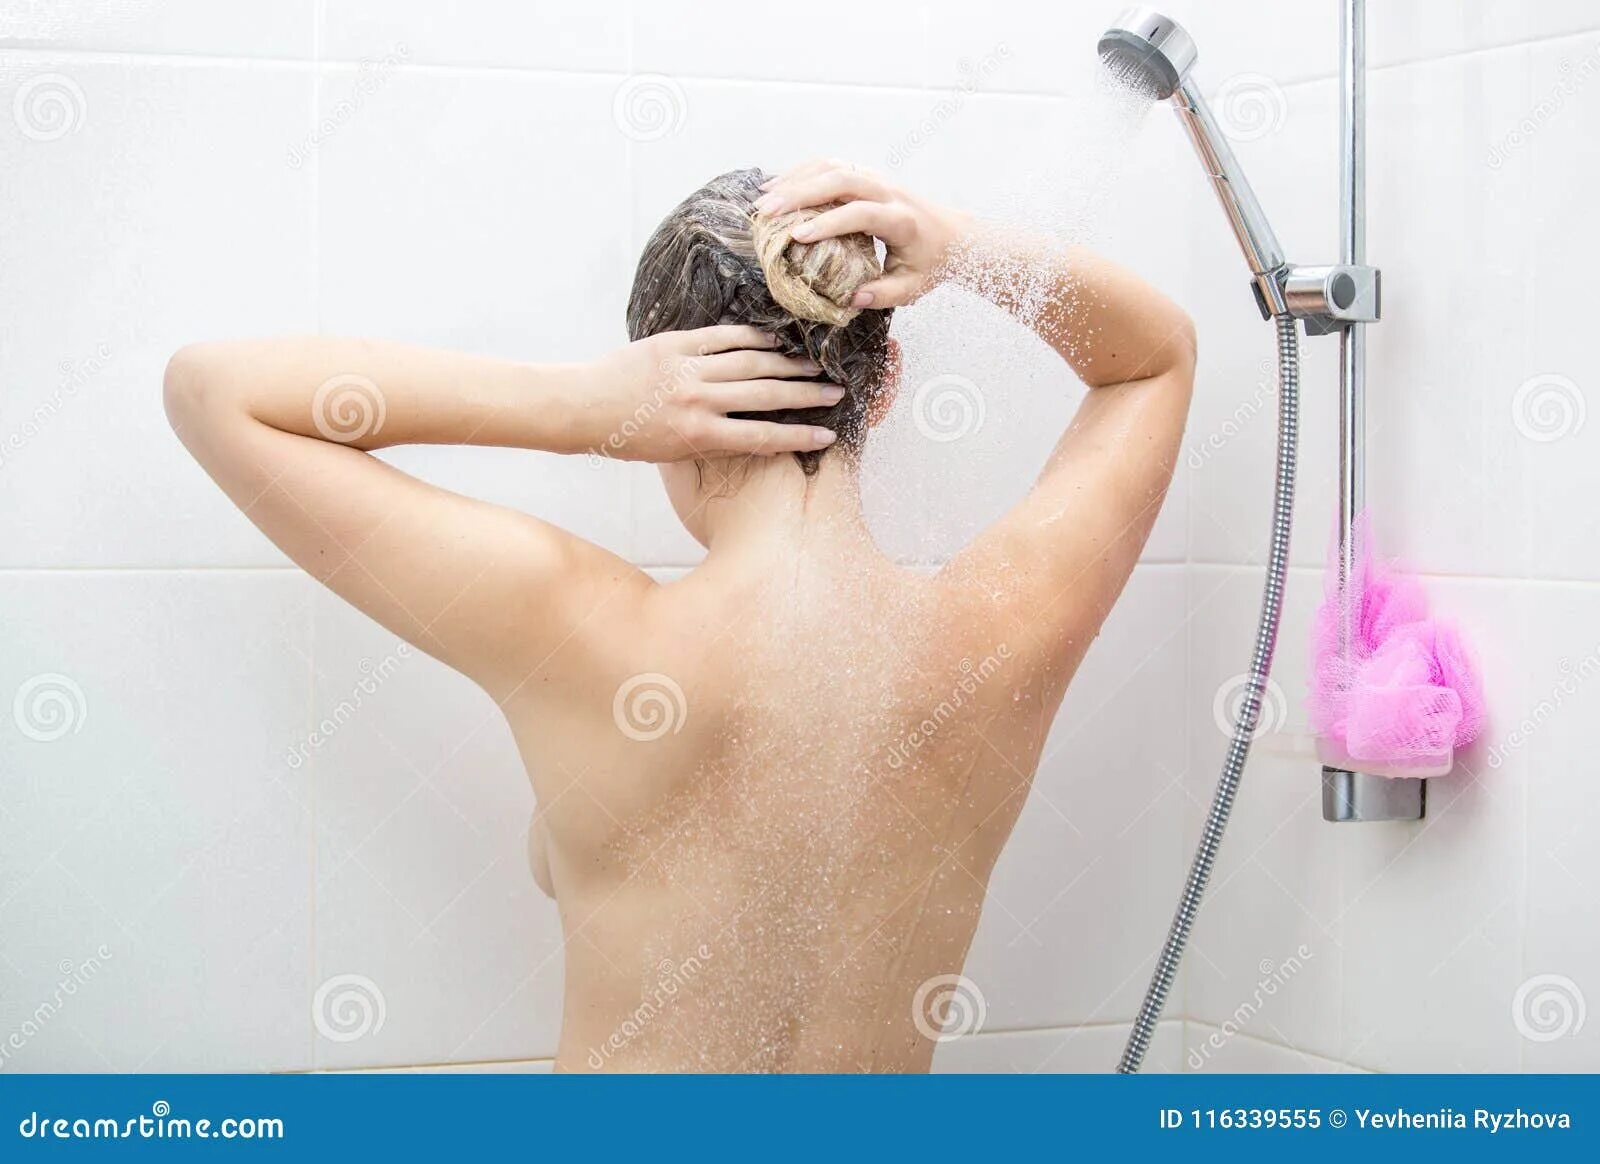 Маленькая моется в душе. Красивые волосы в душе. Для мытья спины. Мытье головы в душе.